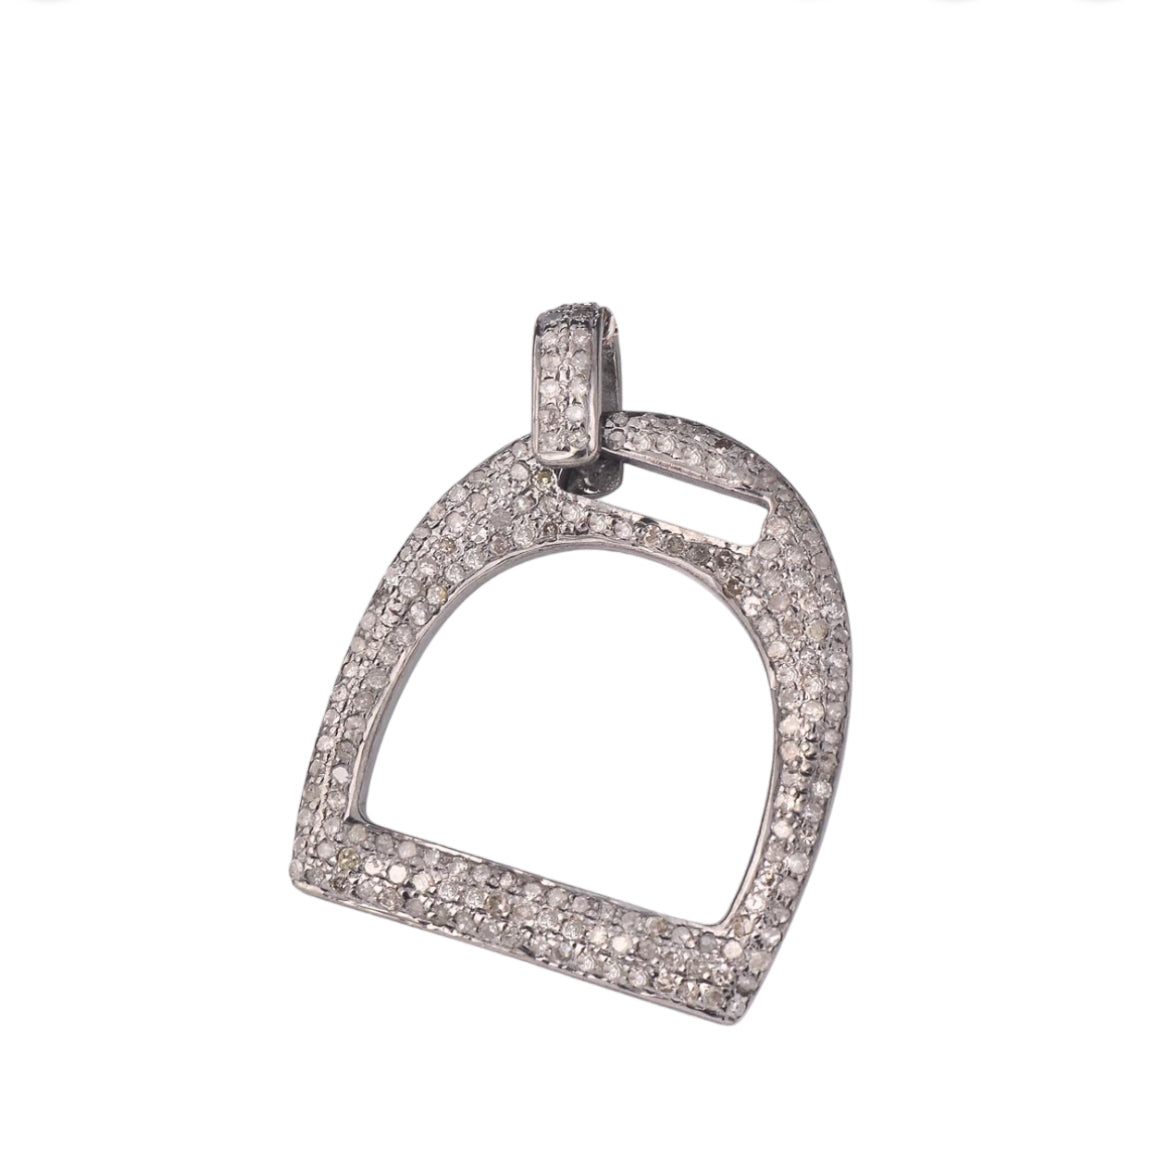 S.Row Designs Pave Diamond Stirrup Pendant